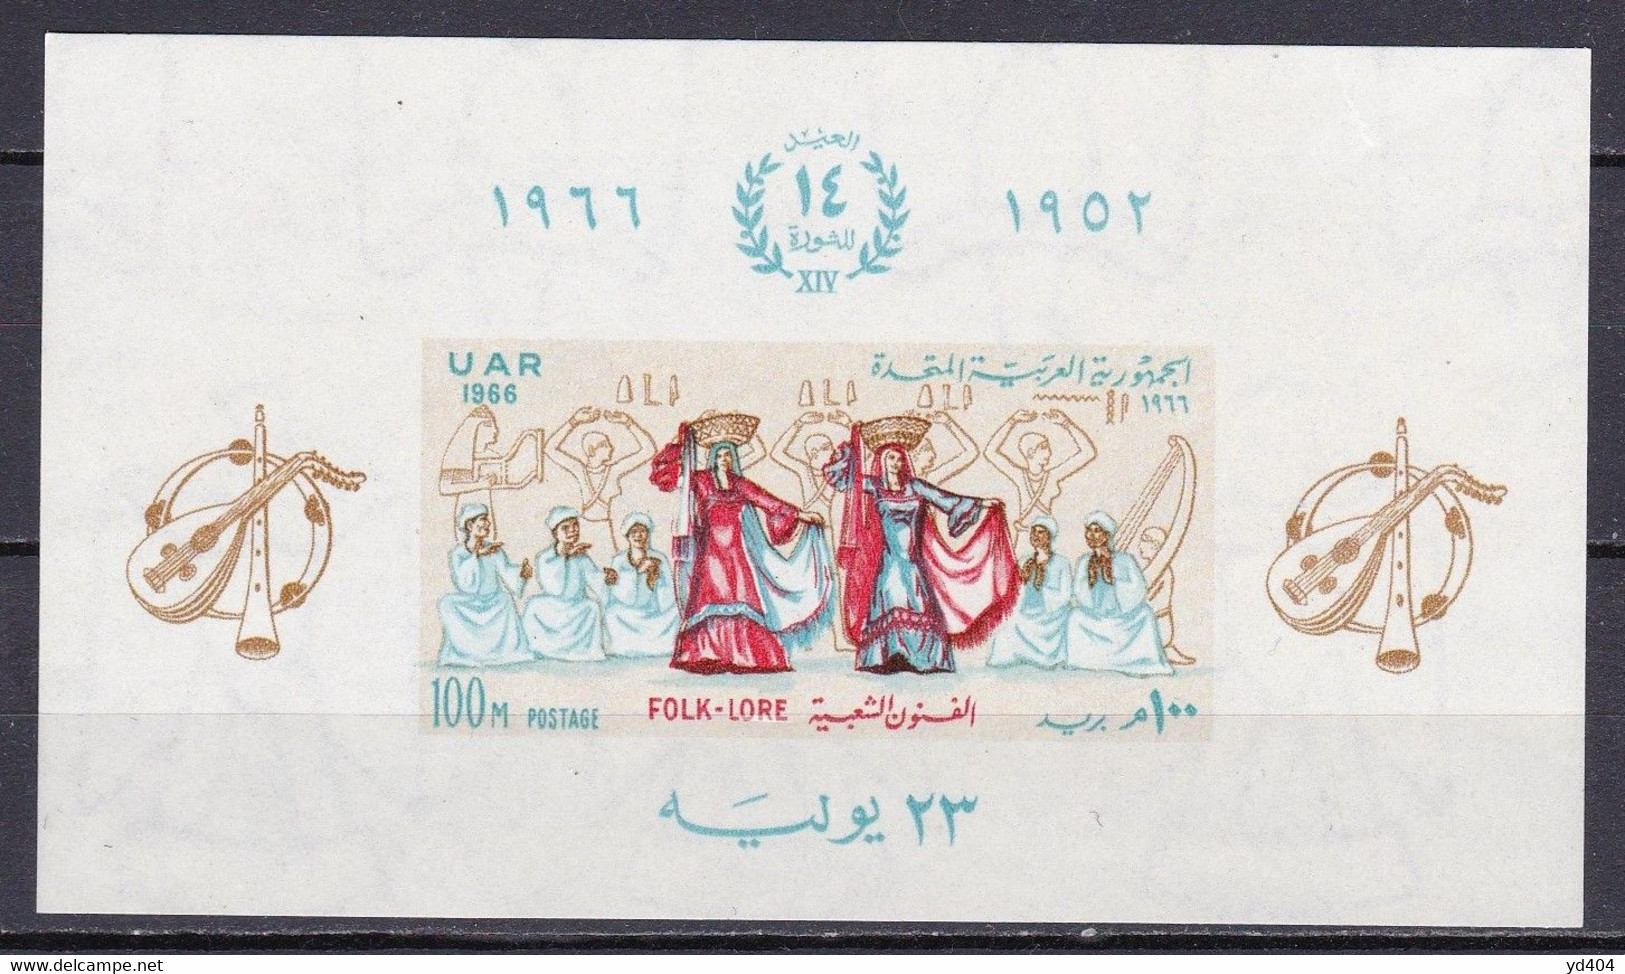 EG565C – EGYPTE – EGYPT – BLOCKS - 1966 - 14th   ANNIVERSARY OF THE REVOLUTION – SG # MS 890 MNH – CV 9,50 € - Blocchi & Foglietti